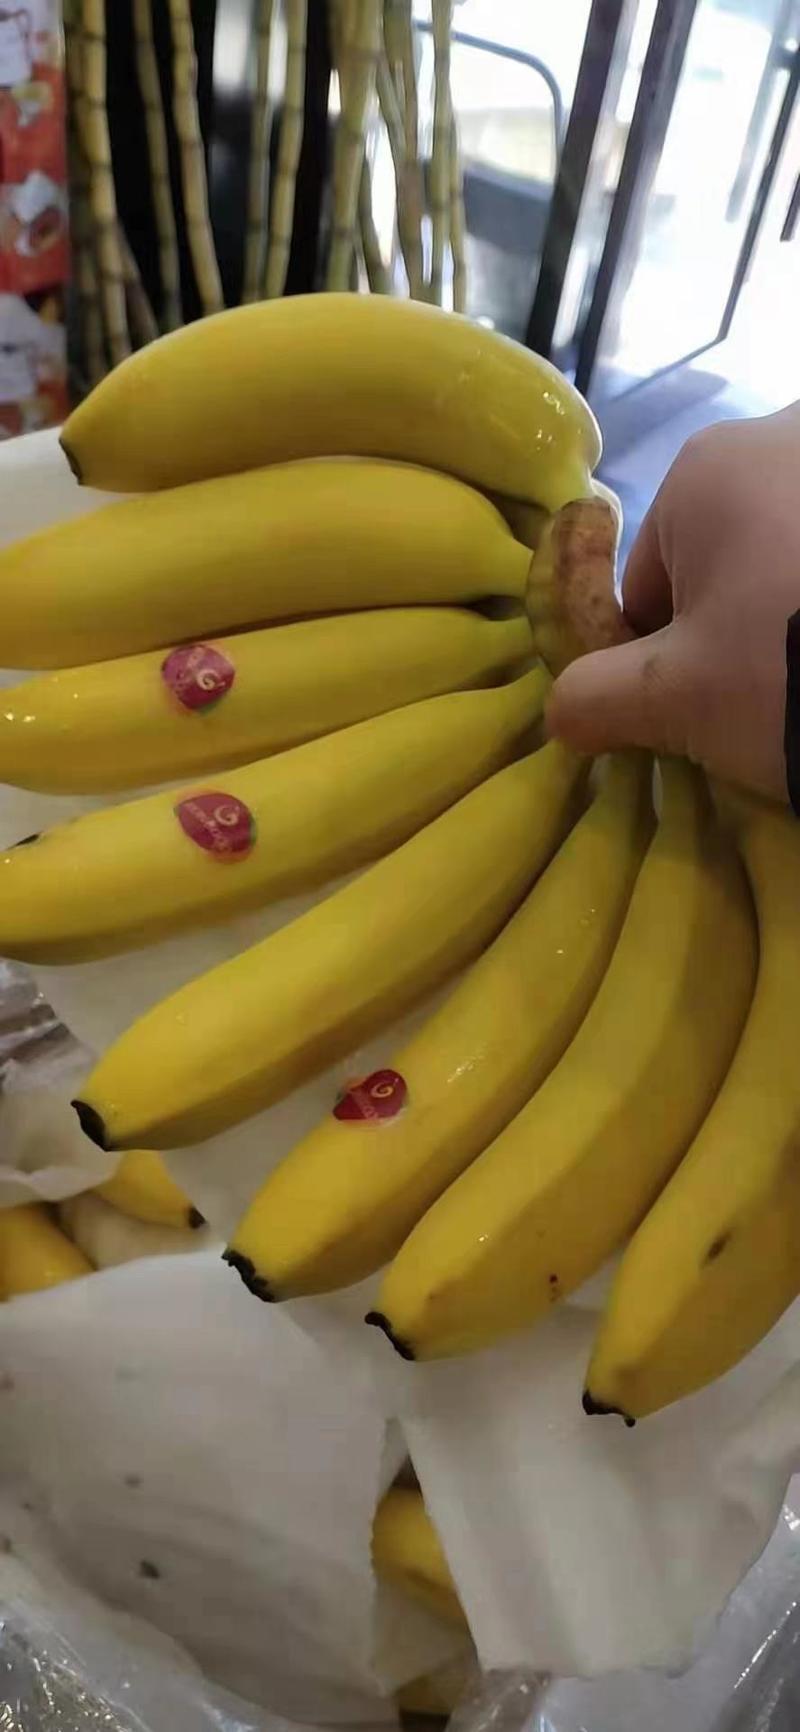 菲利宾进口香蕉